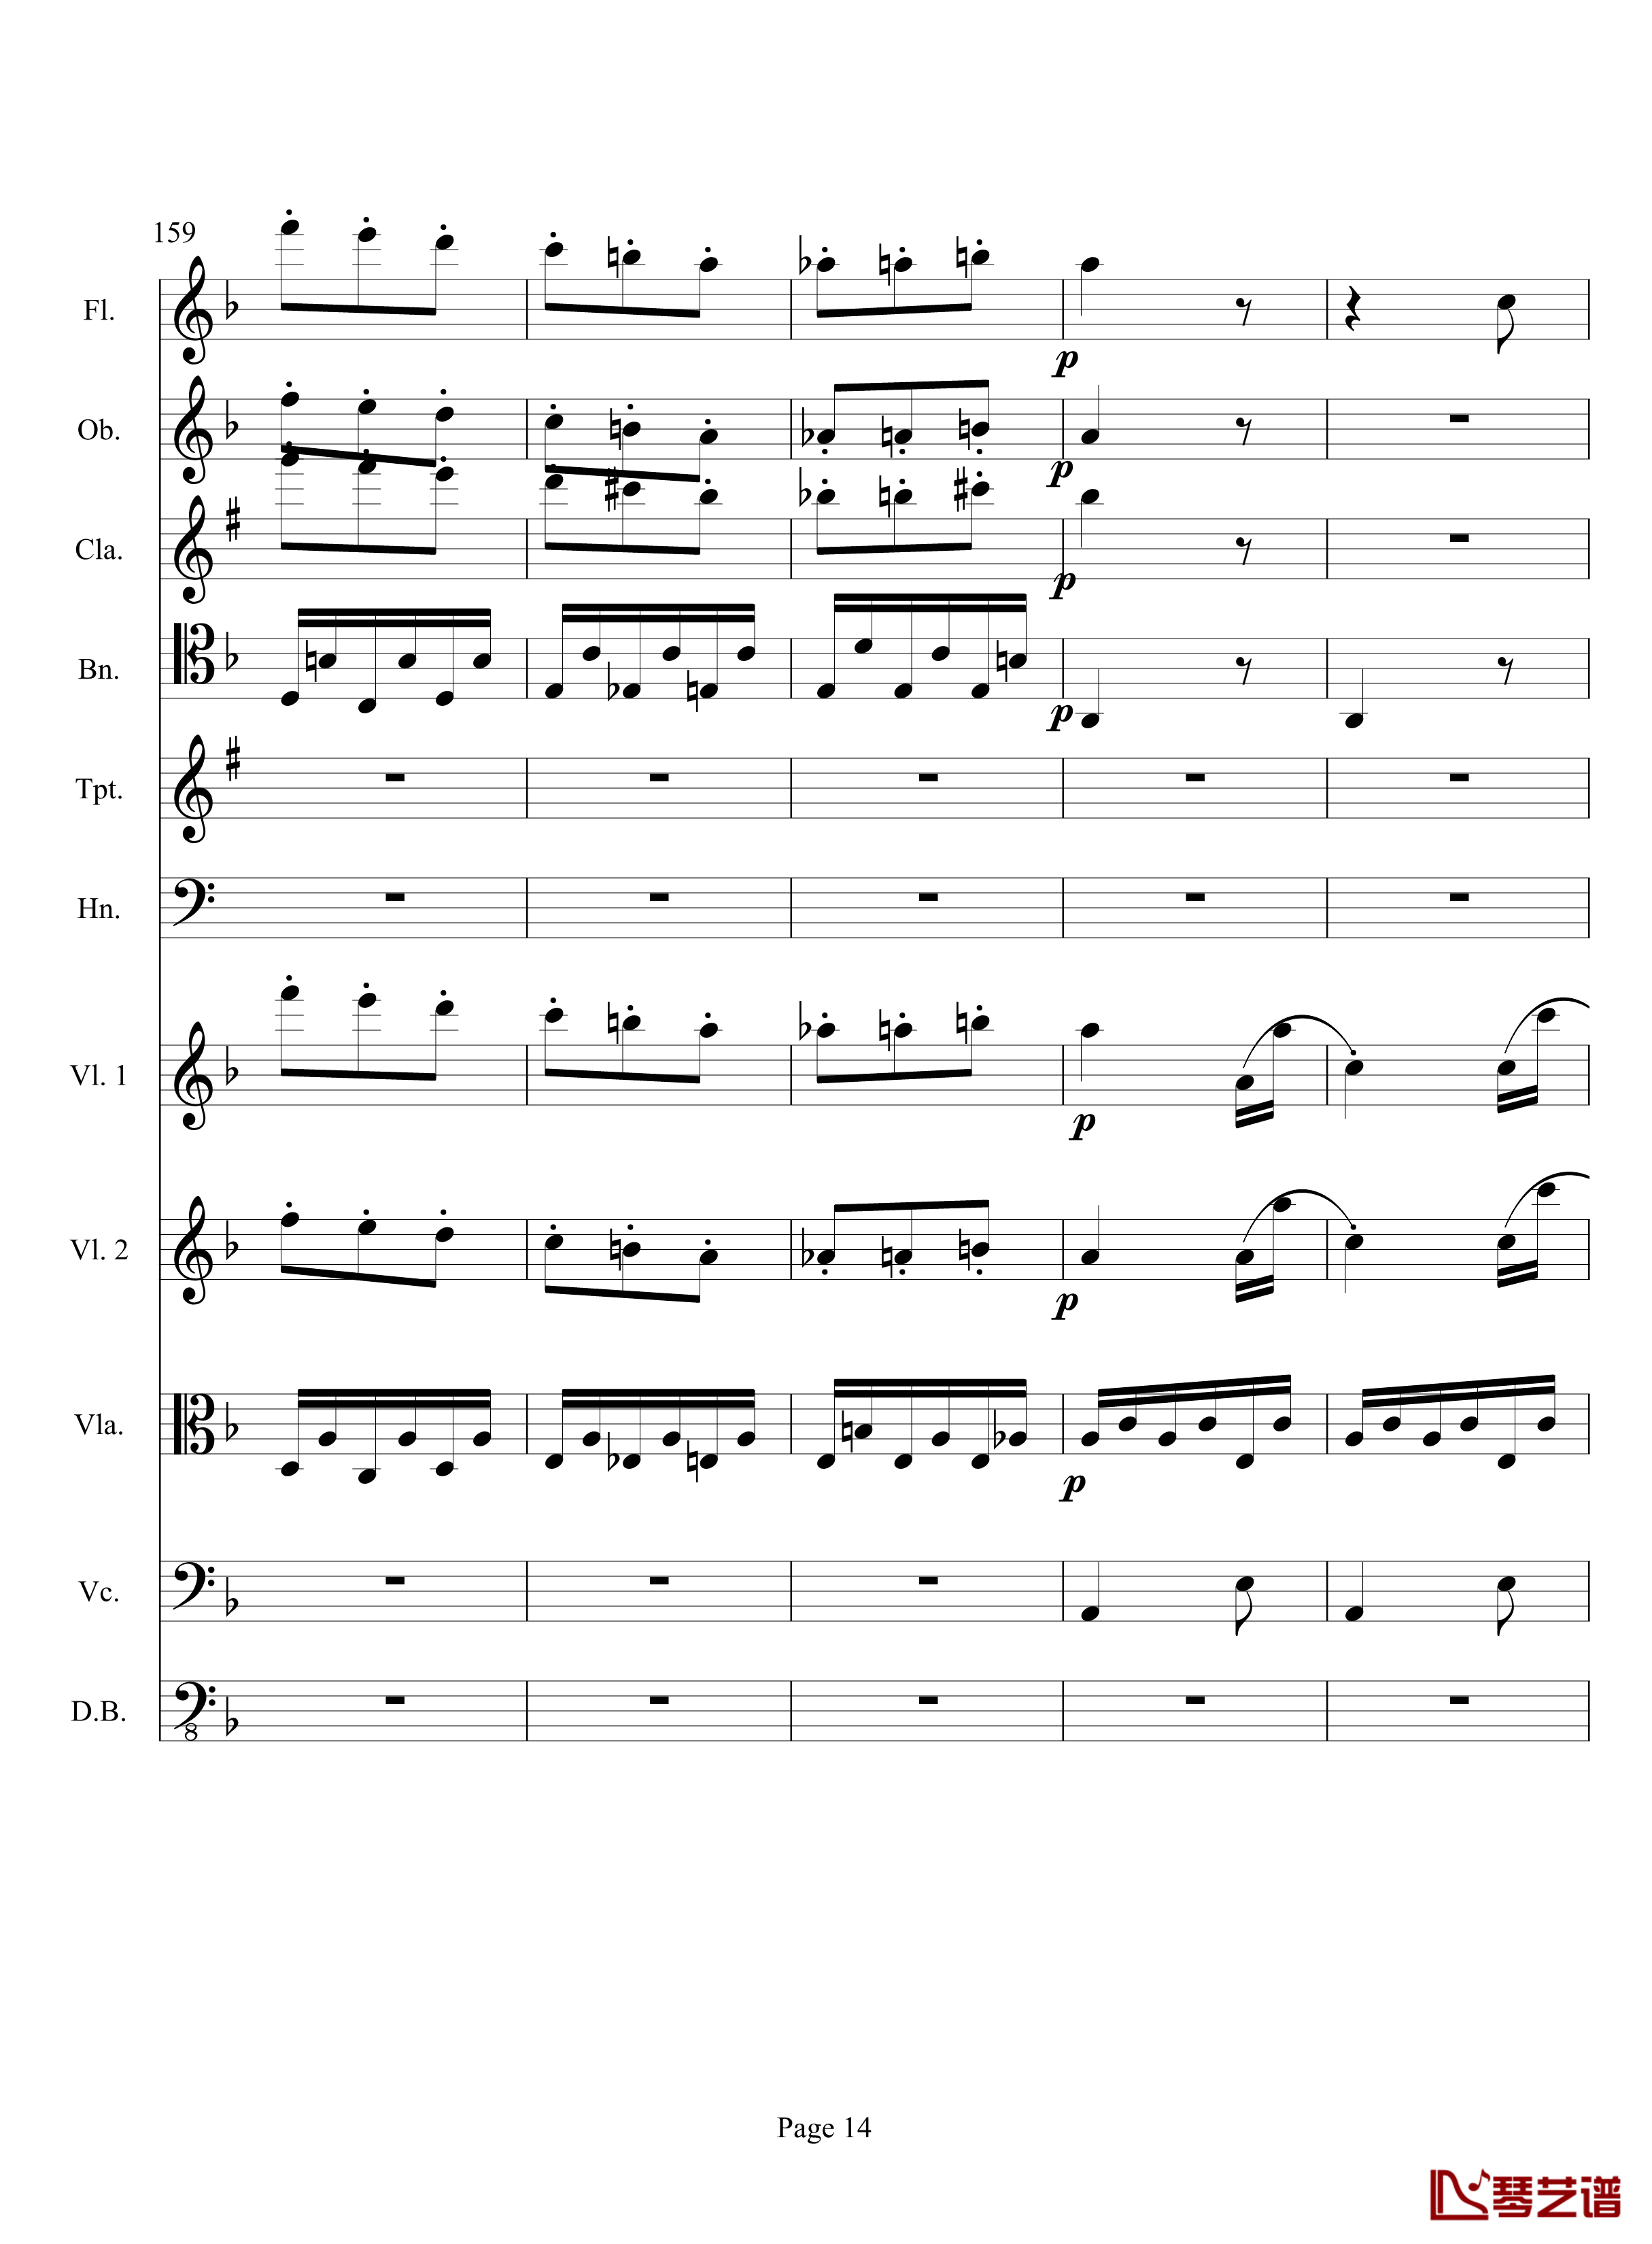 奏鸣曲之交响钢琴谱-第17首-Ⅲ-贝多芬-beethoven14